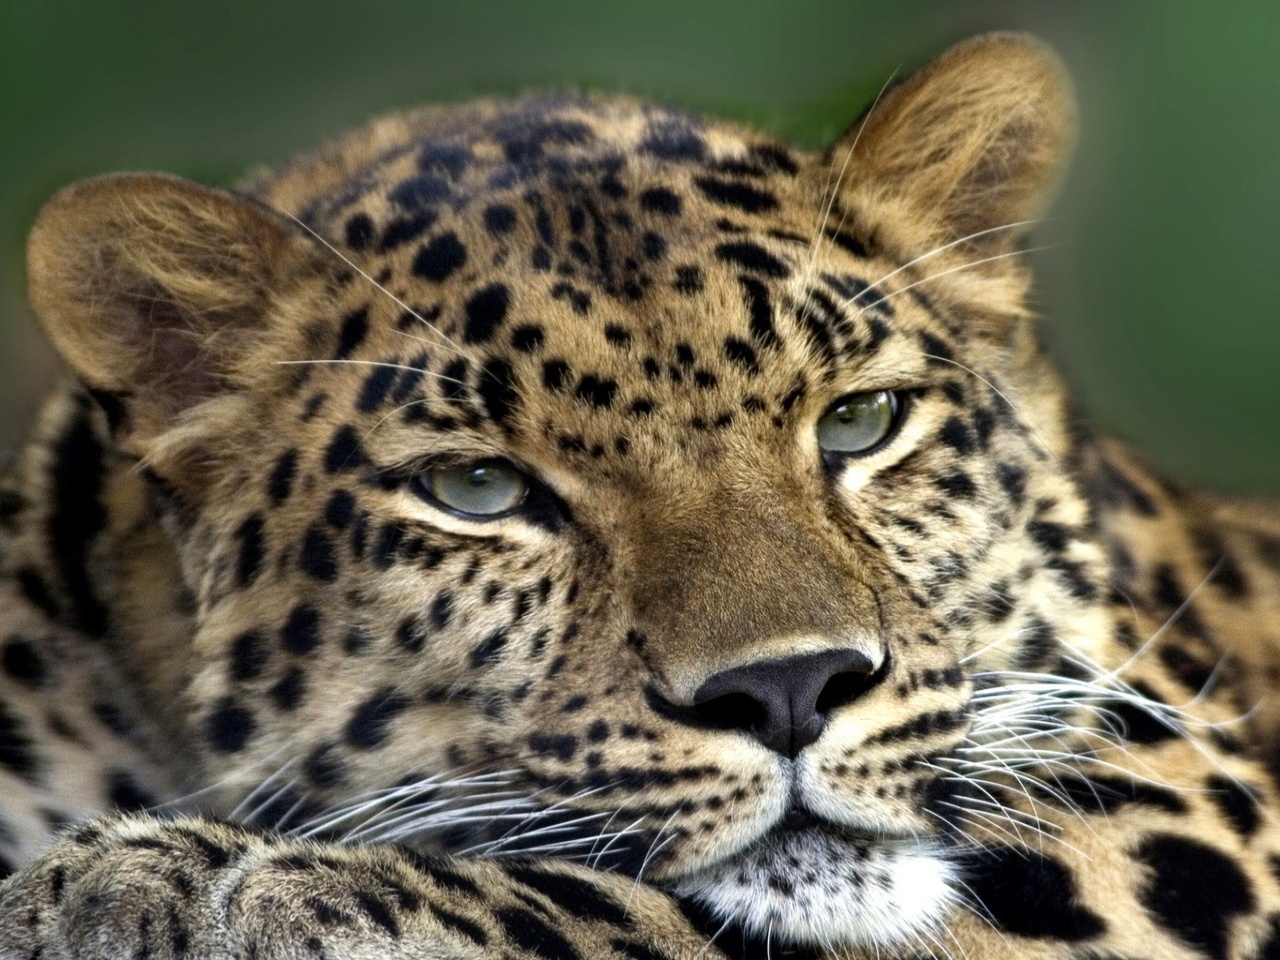 :高清晰野生动物摄影-非洲豹:当前为类型:欧莱